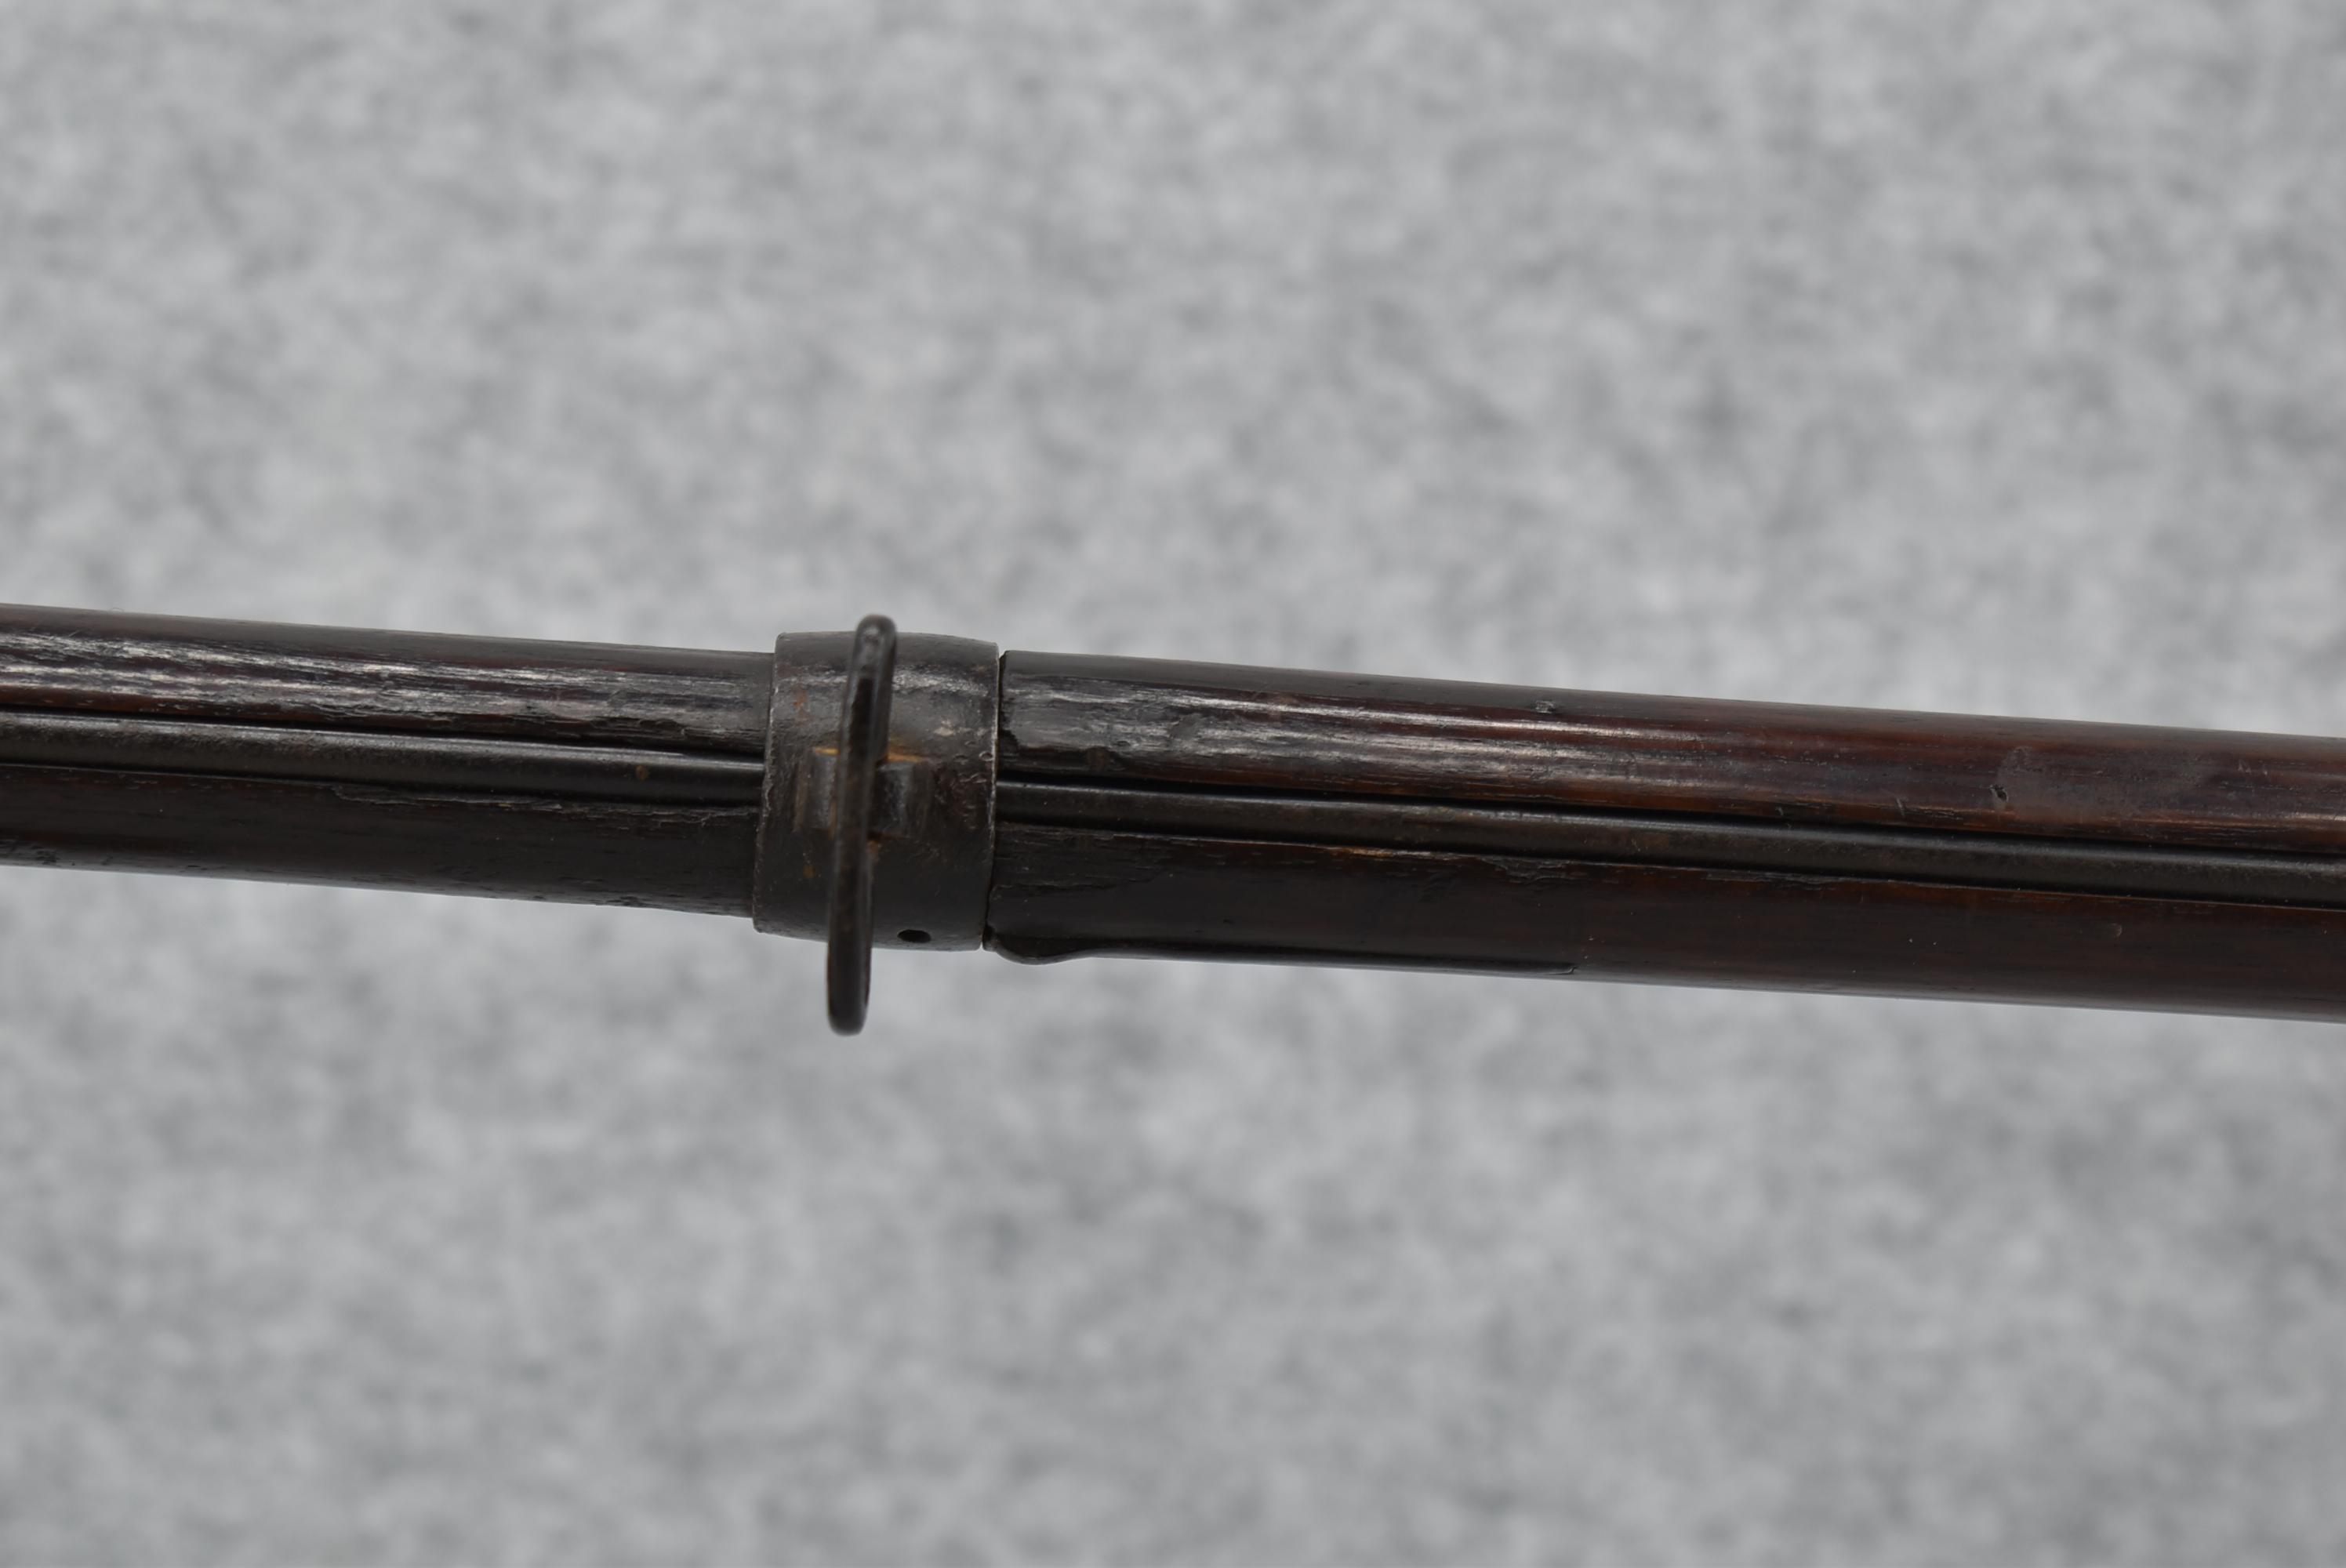 Goetz & Westphal (Philadelphia) – 1808 U.S. Contract Musket – 69 Cal. Flintlock Musket